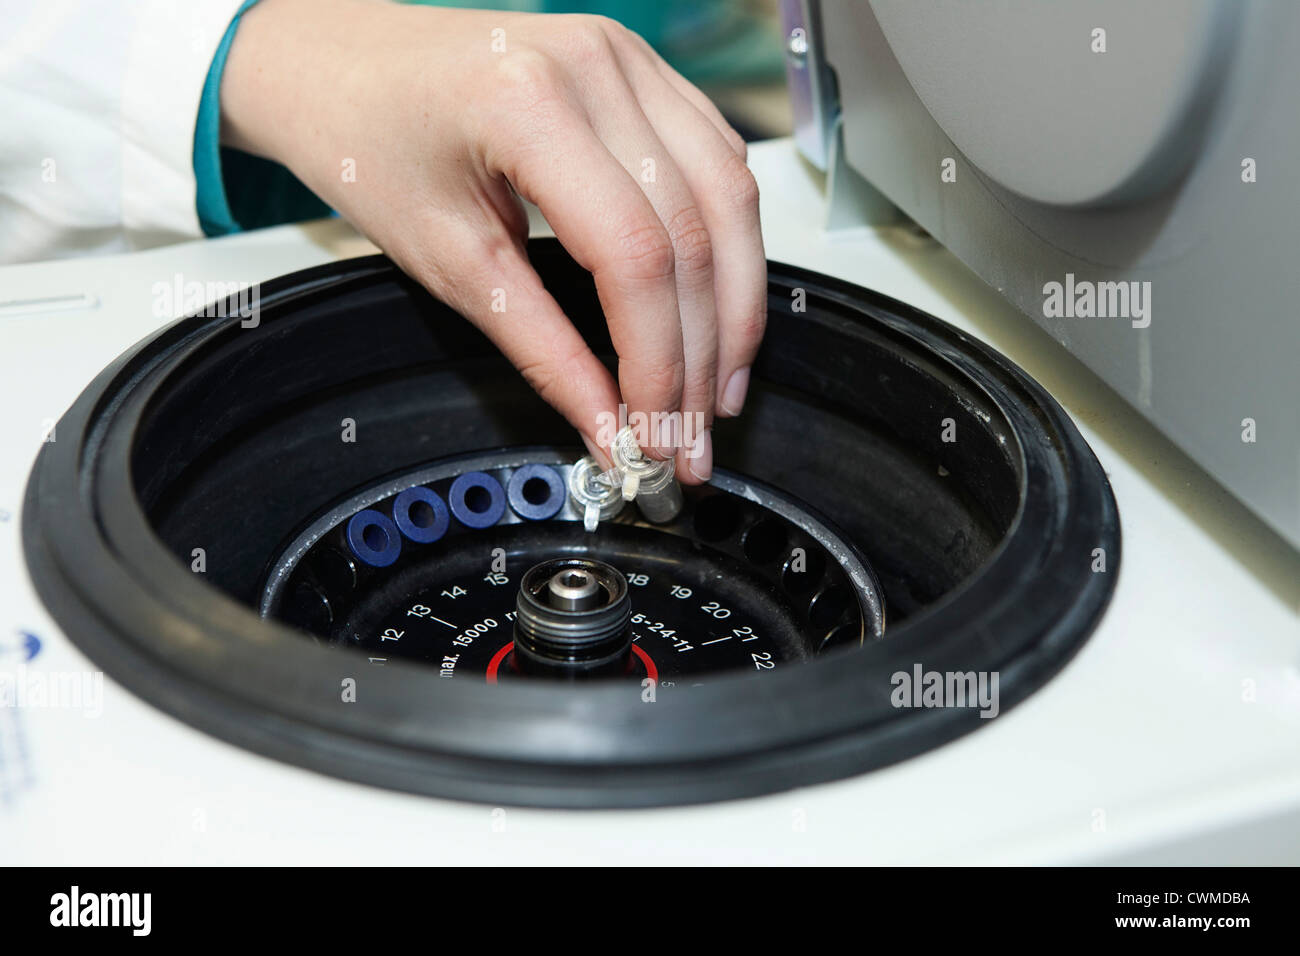 In Germania, in Baviera, Monaco di Baviera, mano umana test di caricamento di tubi in centrifuga di piccole dimensioni Foto Stock